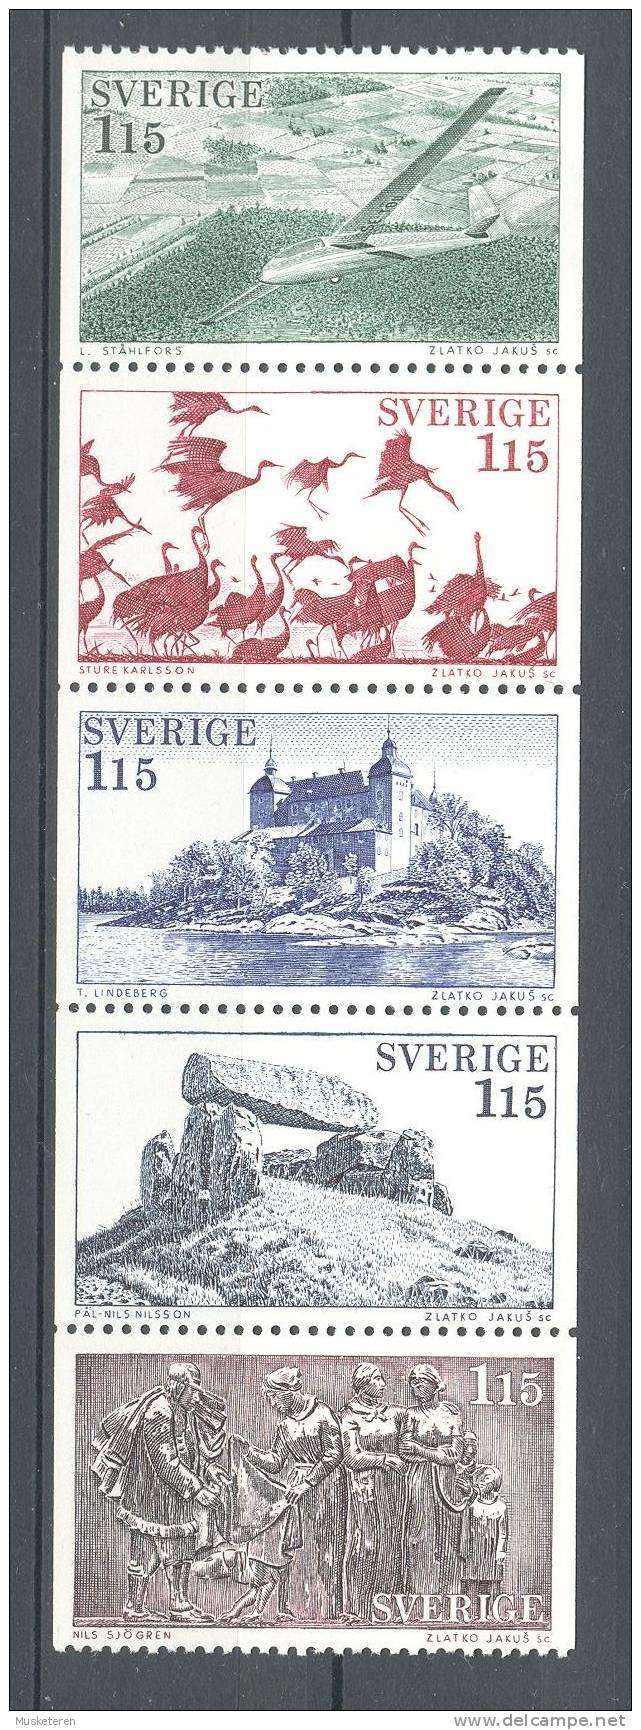 Sweden 1978 Zusammendruck MH-MiNr. 68 (Mi. 1028-32)  1.15 Kr Tourism Tourismus - Västergötland 5-Stripe MNH** - Unused Stamps